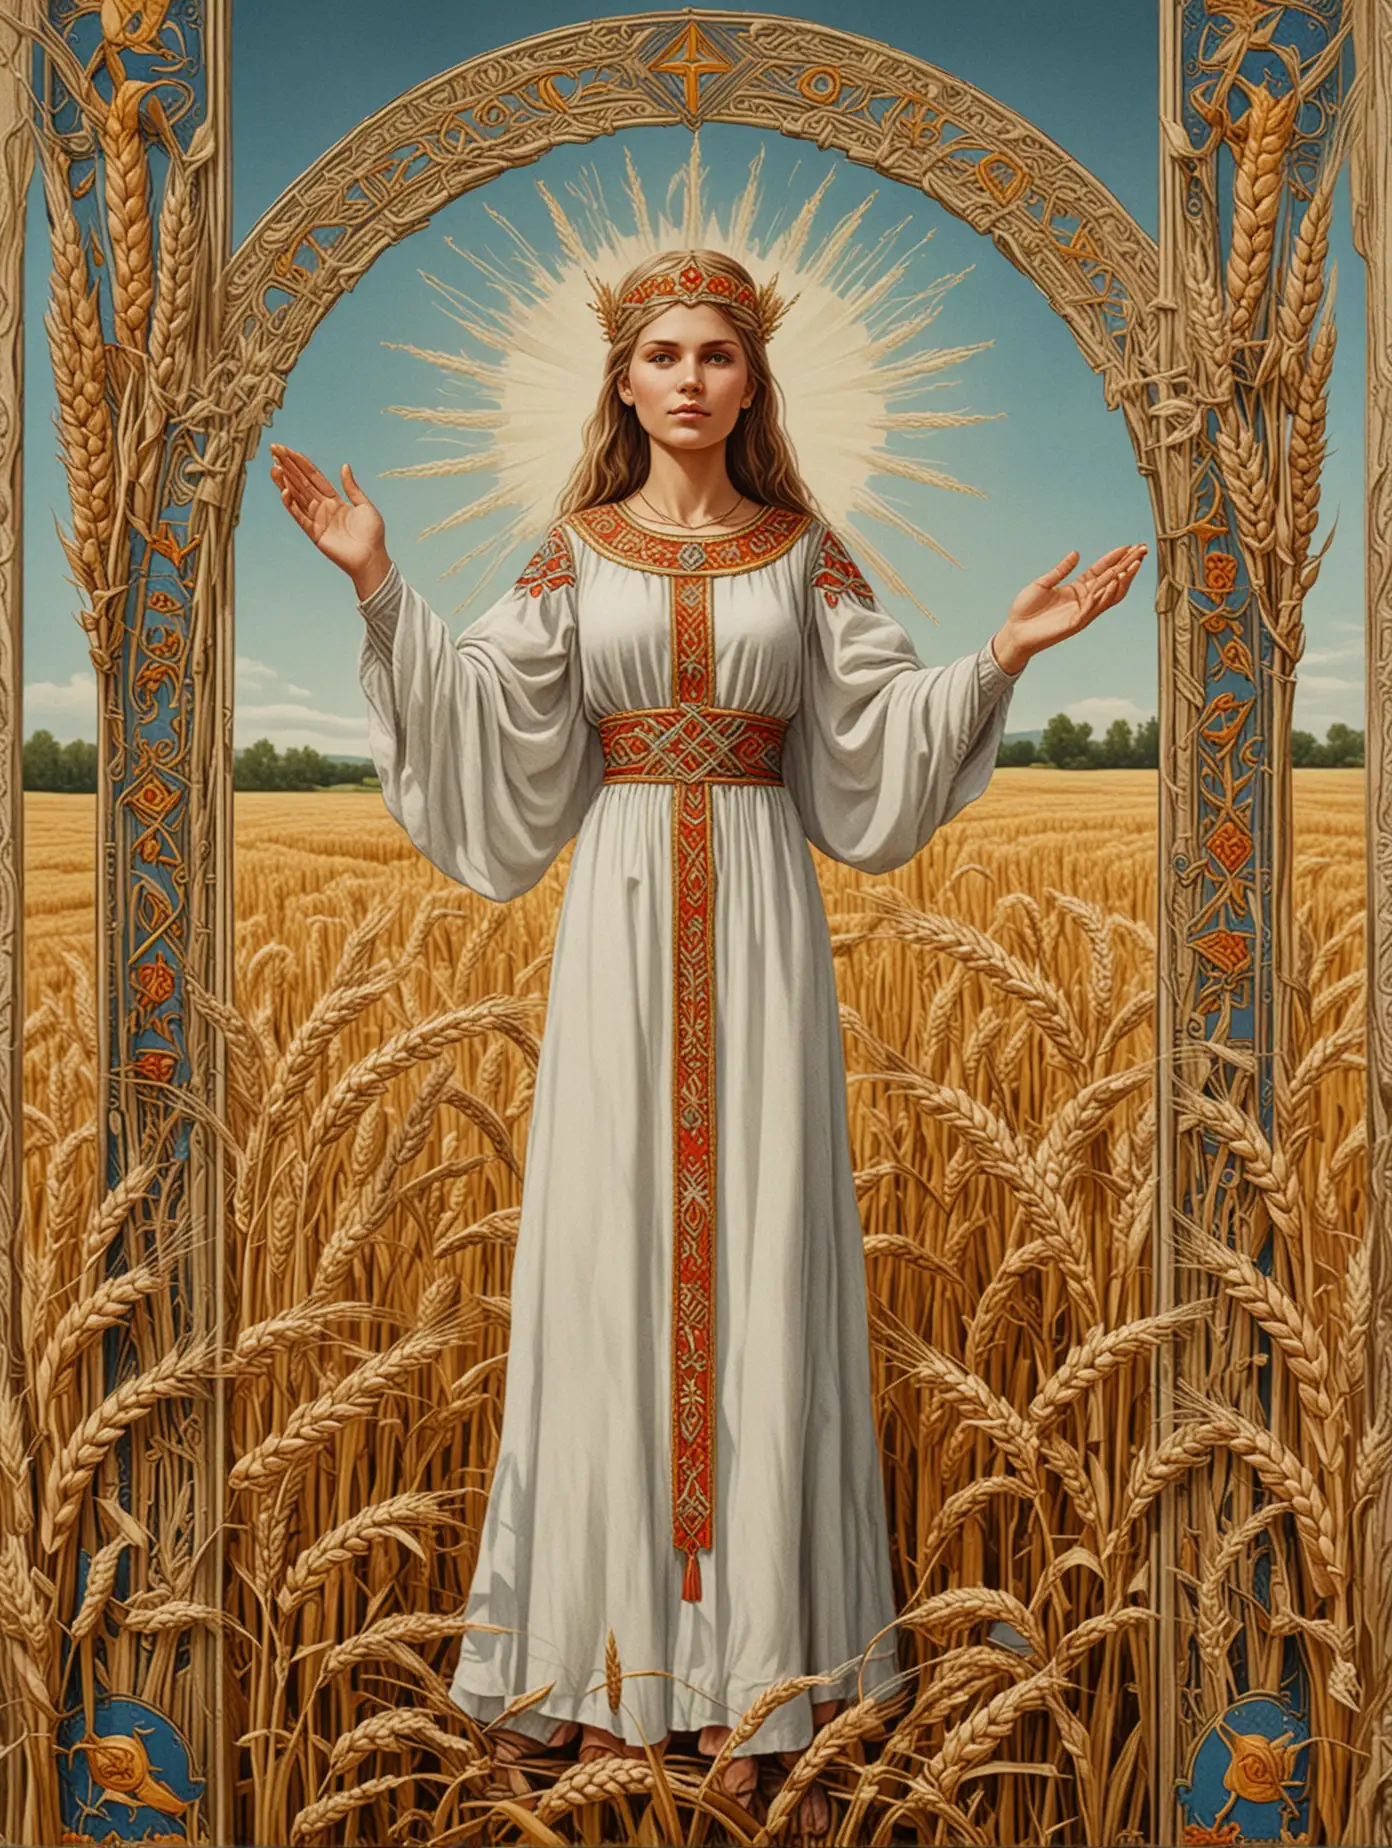 Славянский стиль. Карта таро. Симметрия. Женщина в поле пшеницы с поднятыми руками. Орнамент по краям.